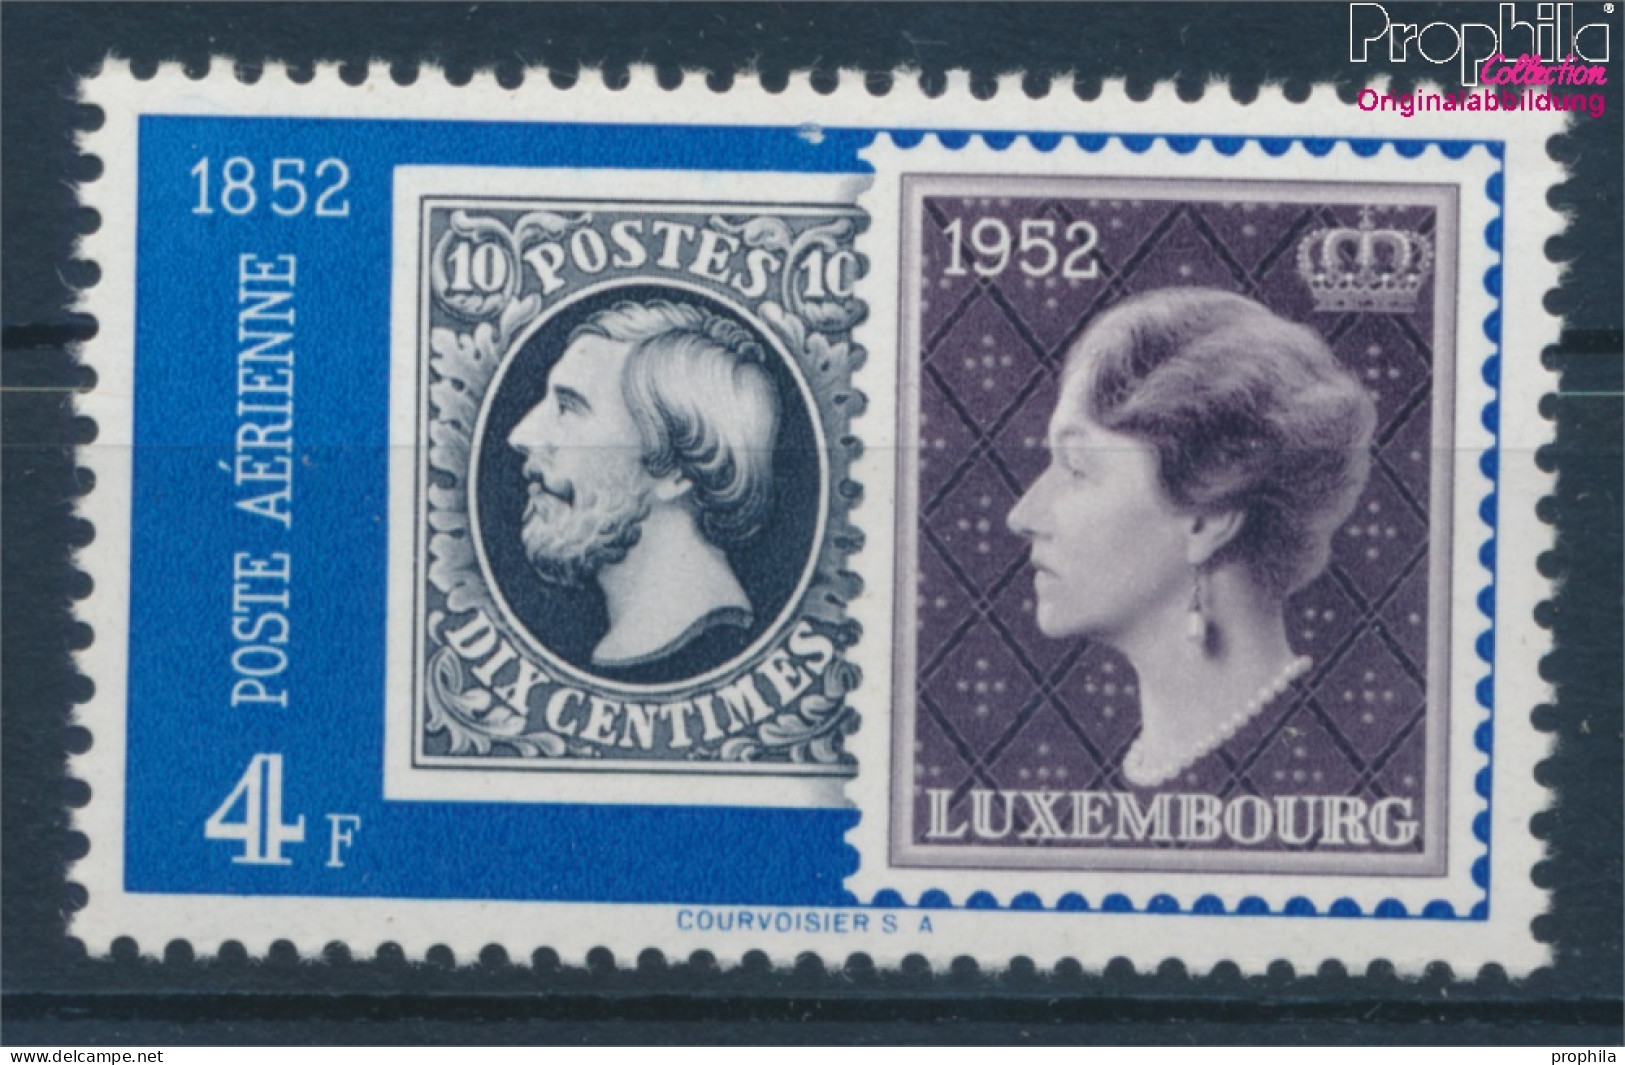 Luxemburg 492 Postfrisch 1952 Philatelie (10363181 - Ungebraucht